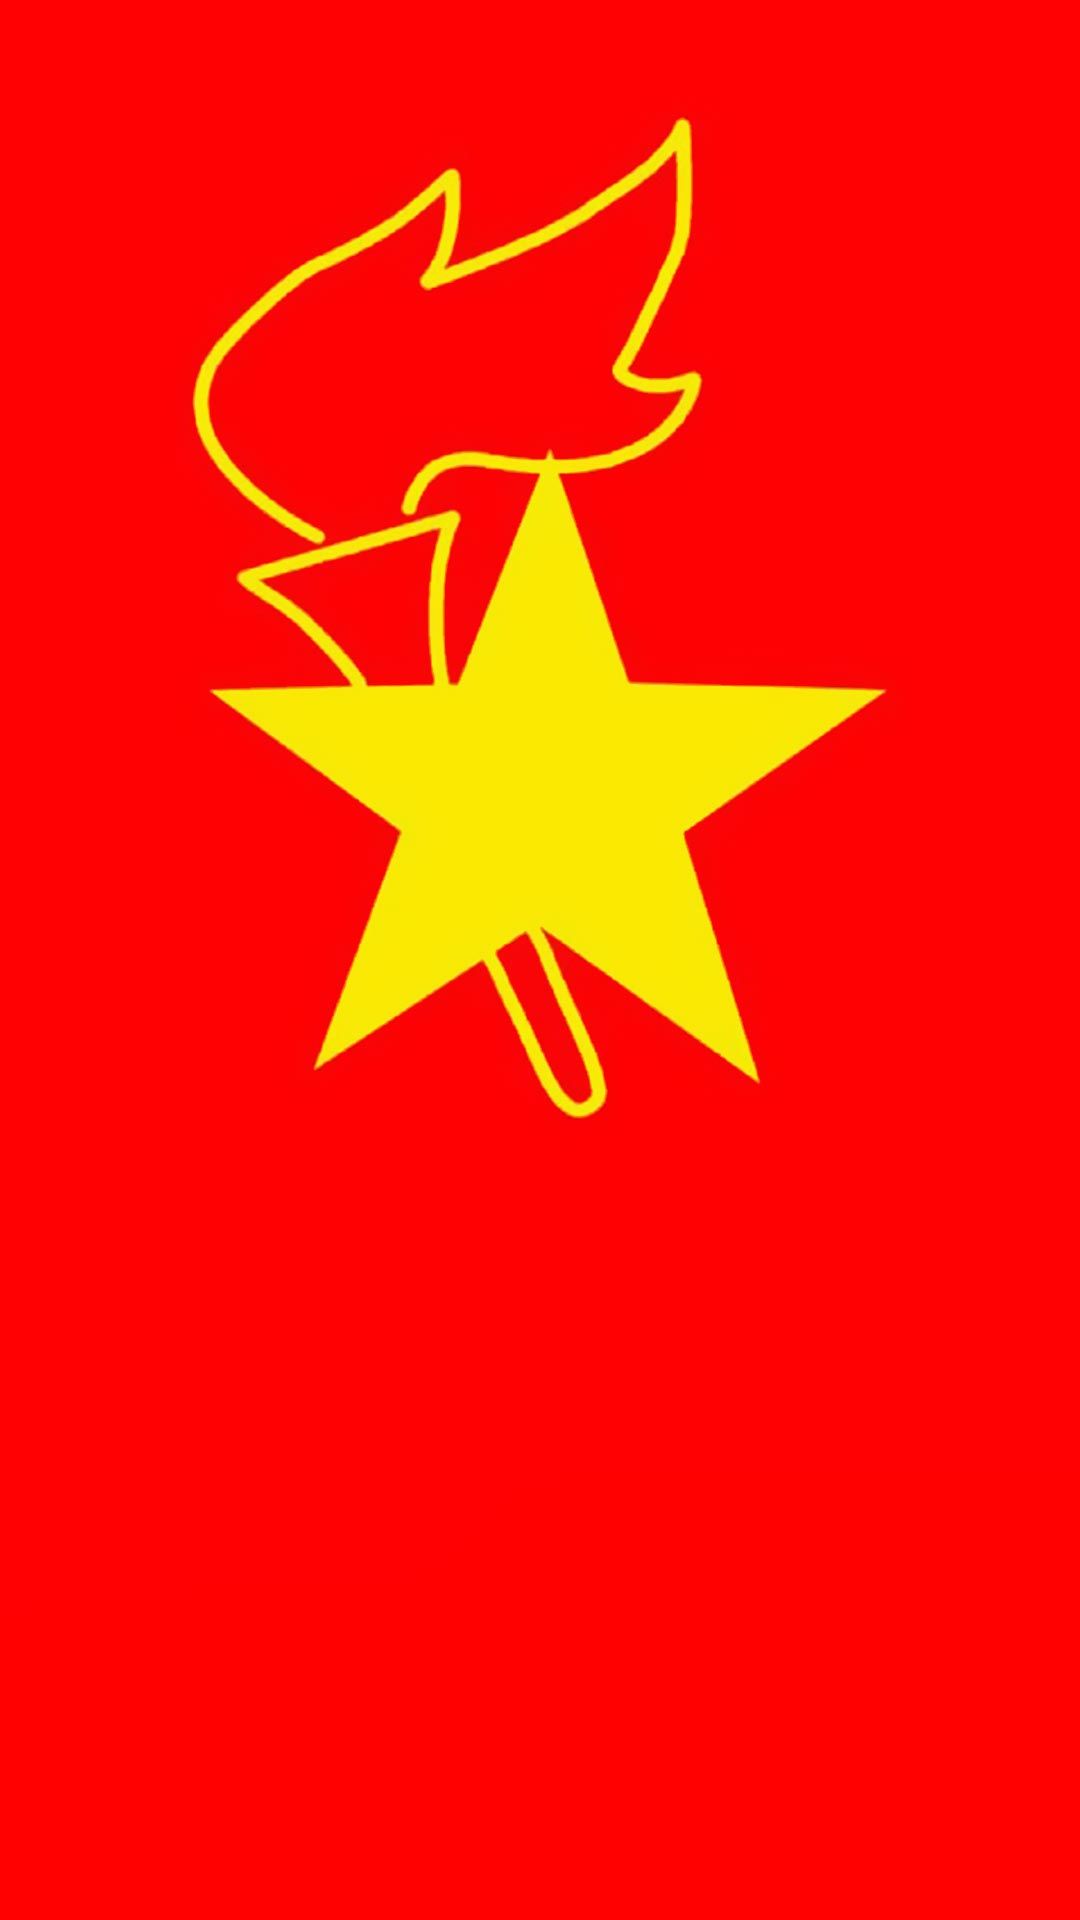 中国少先队大队旗和队徽高清手机壁纸图片下载